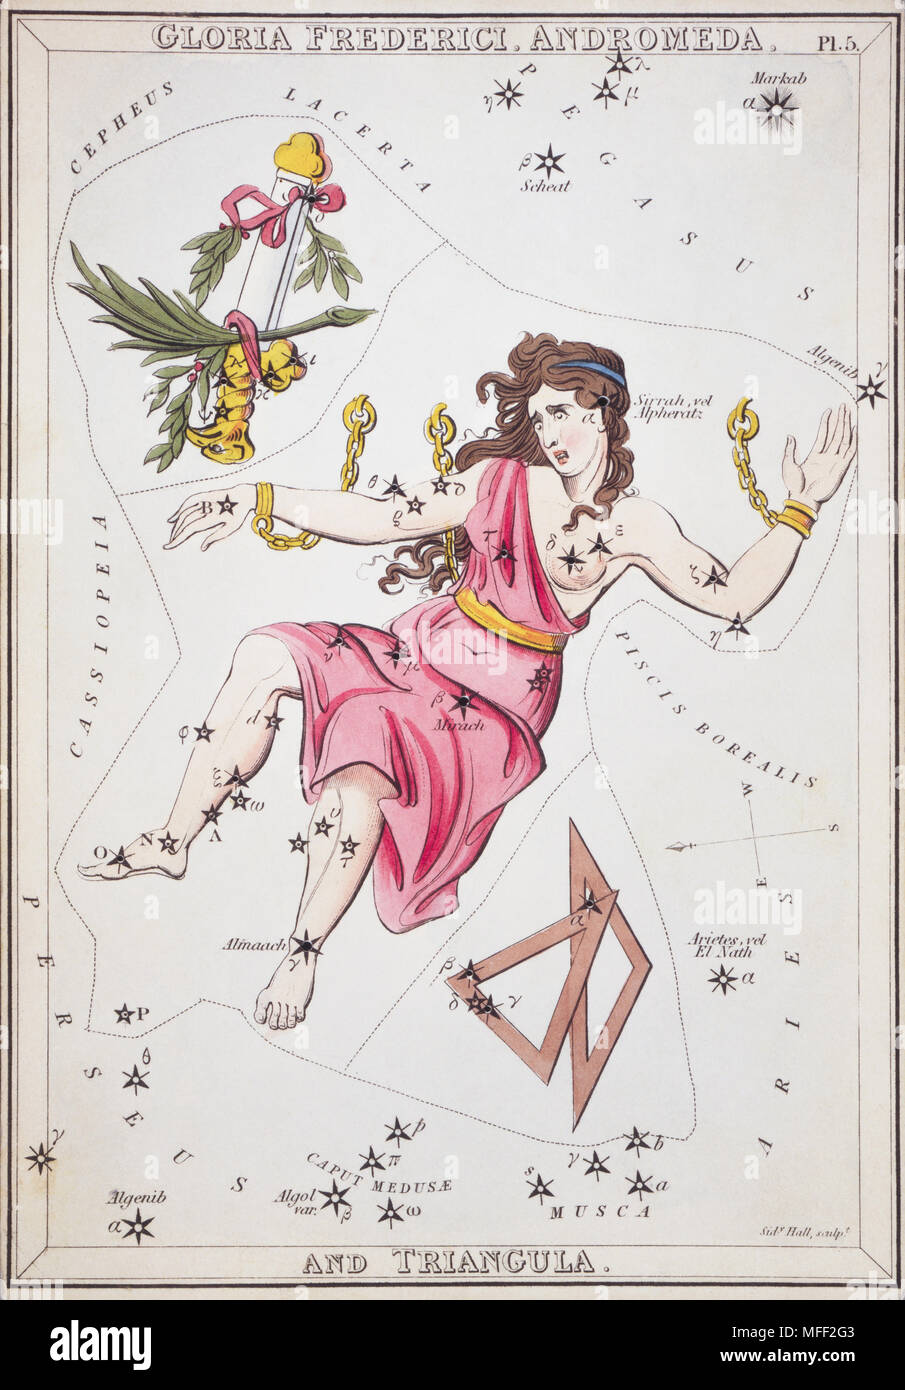 Gloria Frederici, Andrómeda y Triangula. Tarjeta número 5 del espejo de Urania, o una vista del cielo, un conjunto de 32 tarjetas gráfico estrella astronómico grabado por Sidney Hall y publshed 1824. Foto de stock